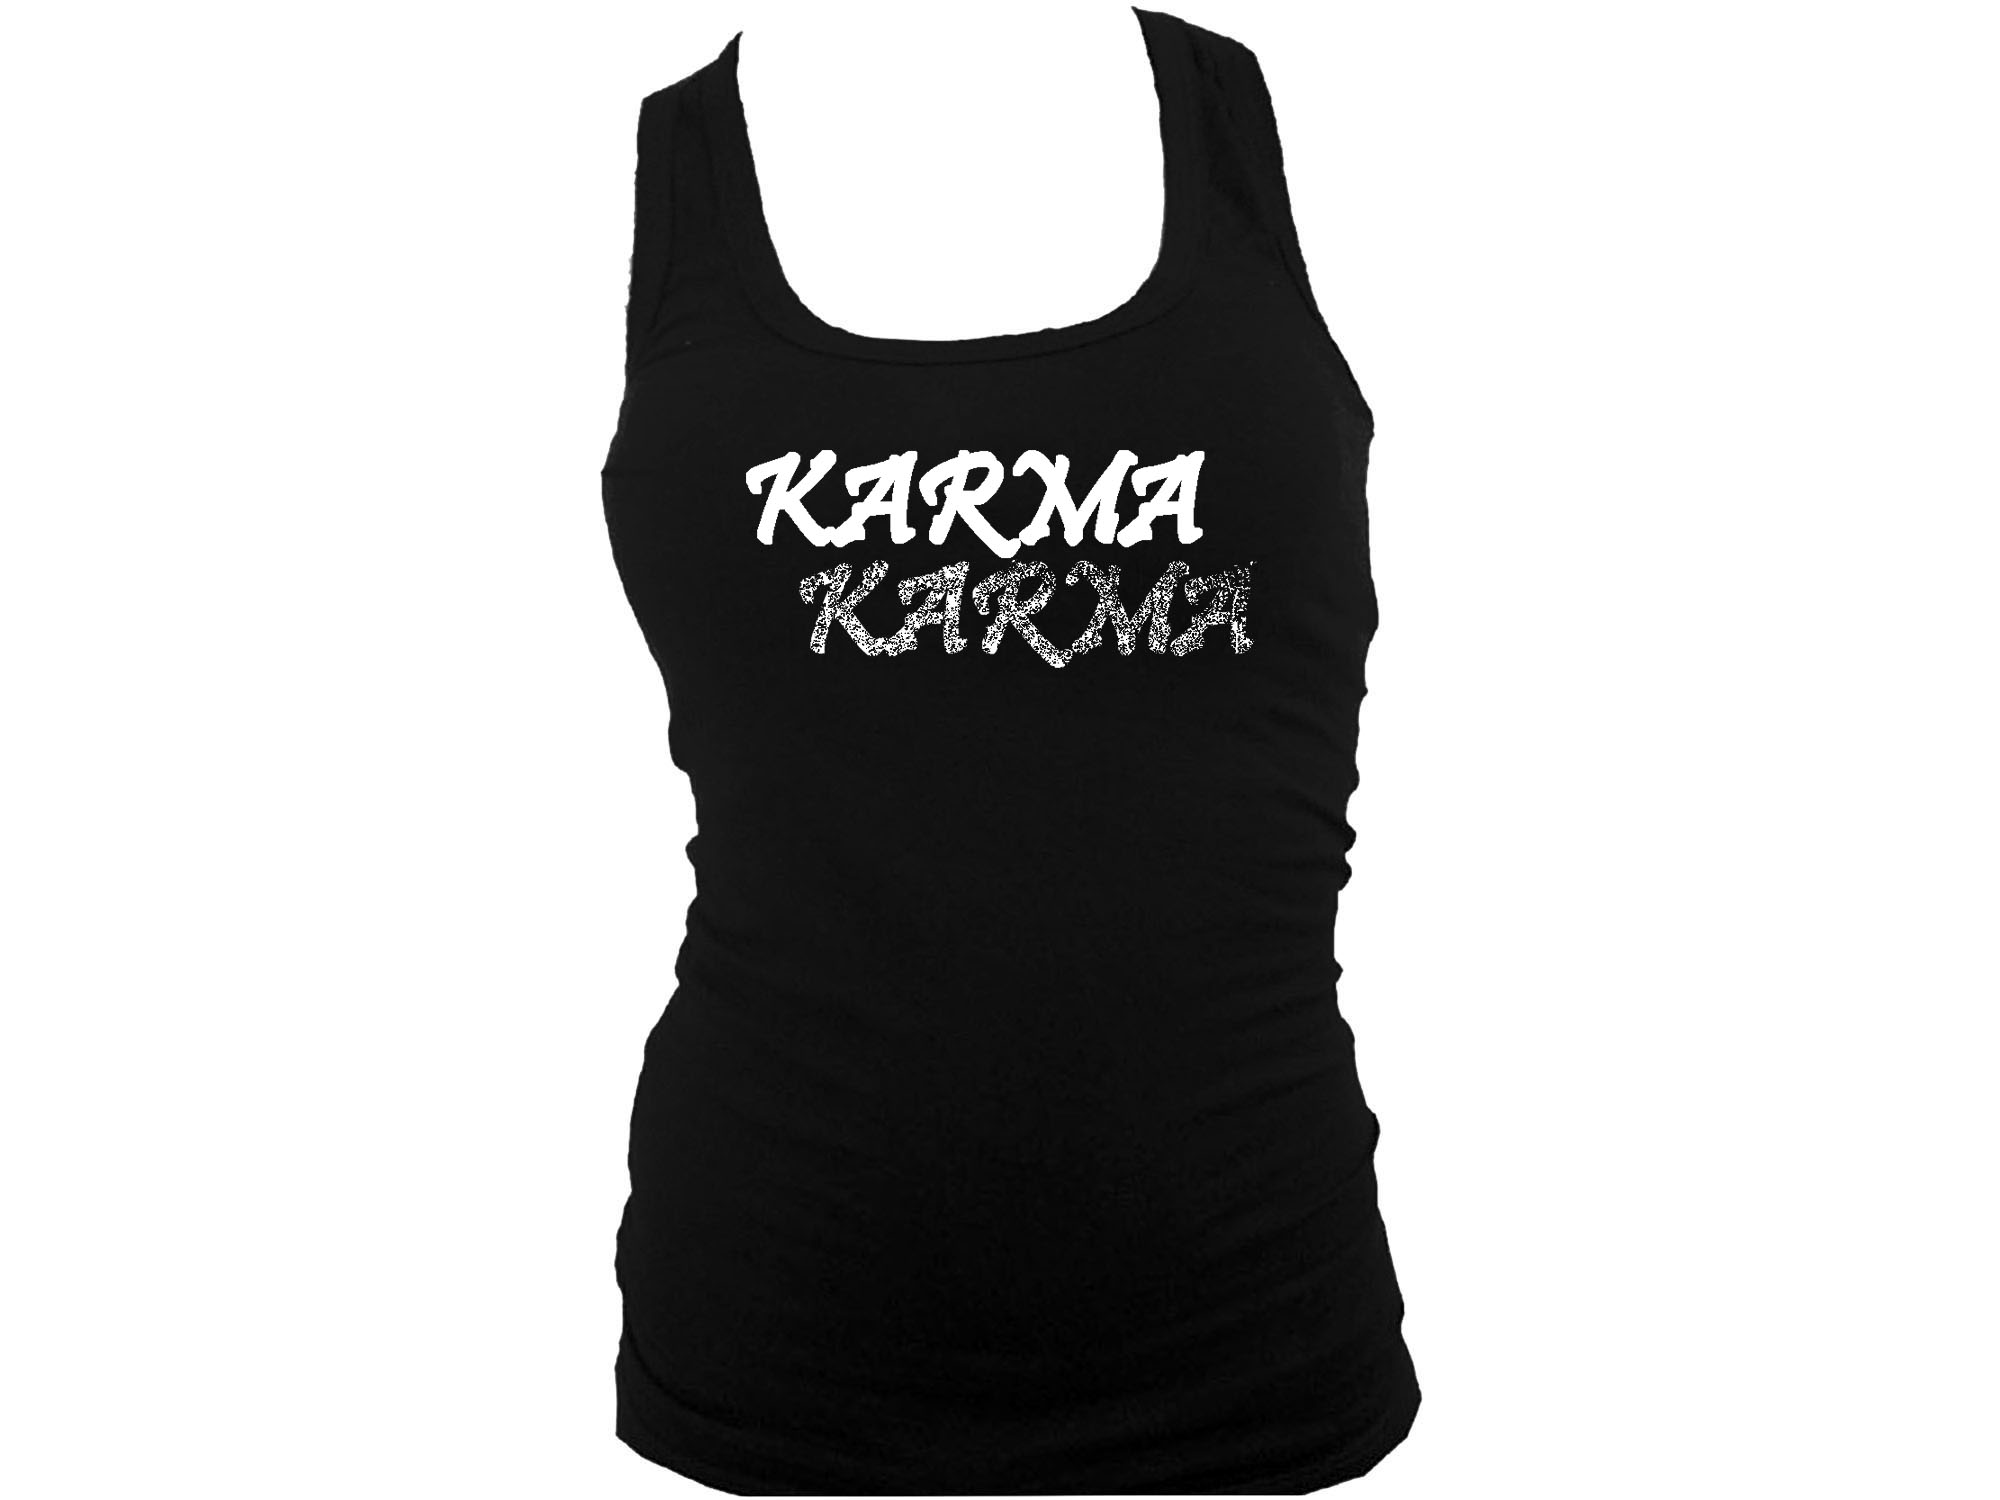 Karma yoga wear women black tank top L/XL